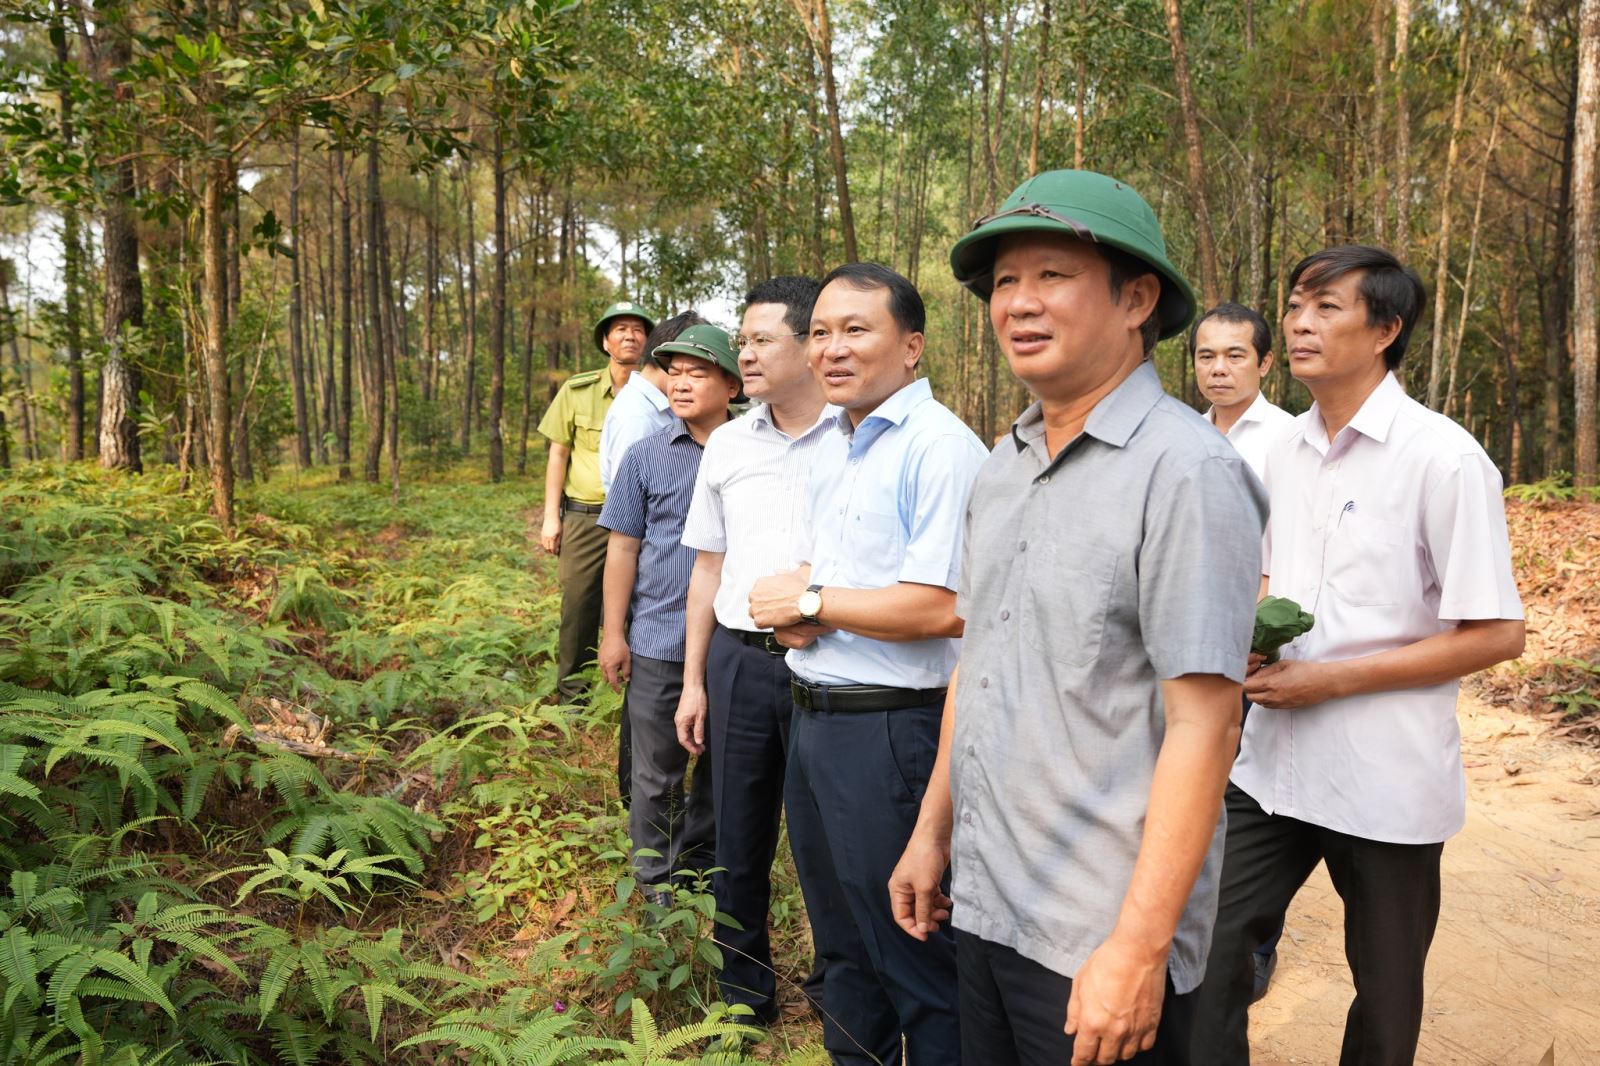 Bí thư Tỉnh ủy  Thừa Thiên Huế Lê Trường Lưu đi kiểm tra công tác bố trí lực lượng, phương tiện và công tác giảm vật liệu cháy trong phòng cháy rừng và triển khai các biện pháp lâm sinh phục vụ cho công tác PCCC rừng tại địa bàn vào ngày 17/4.